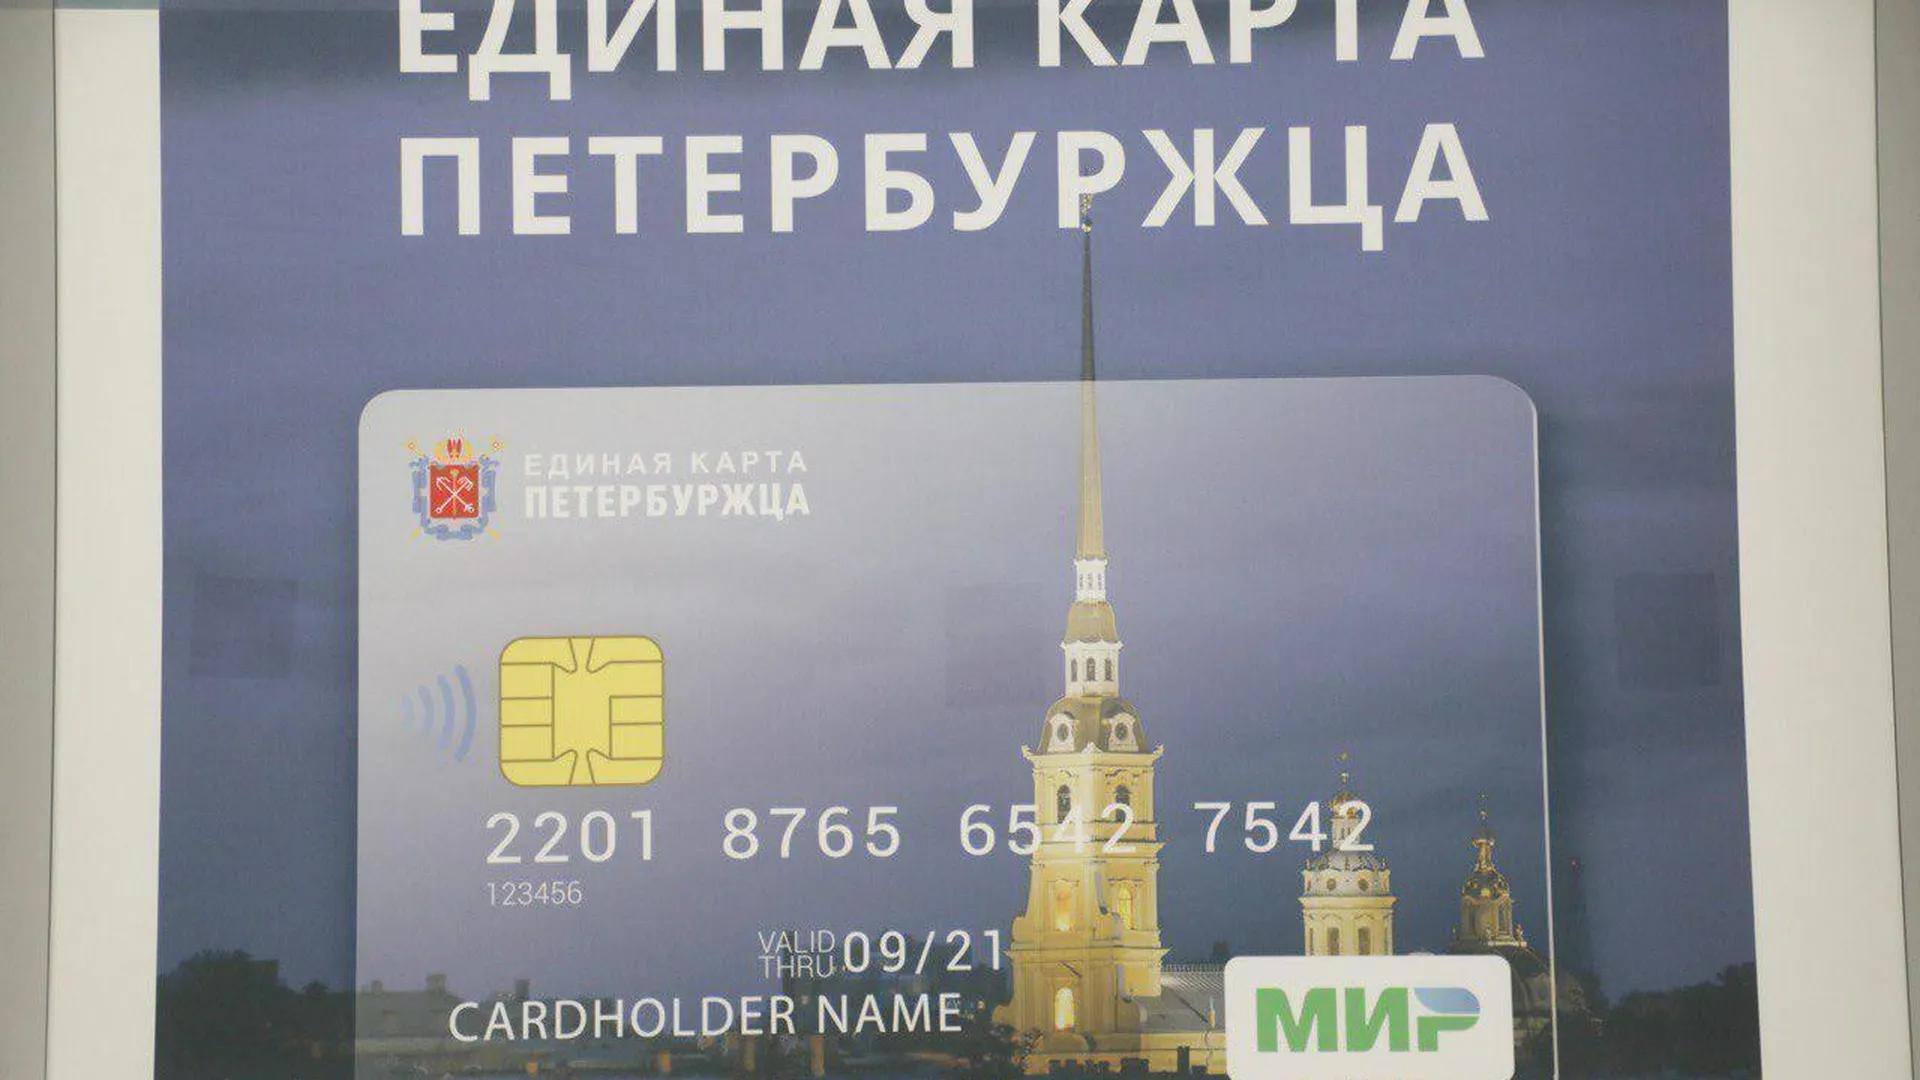 Более 5,5 млрд рублей сэкономили держатели Единой карты петербуржца